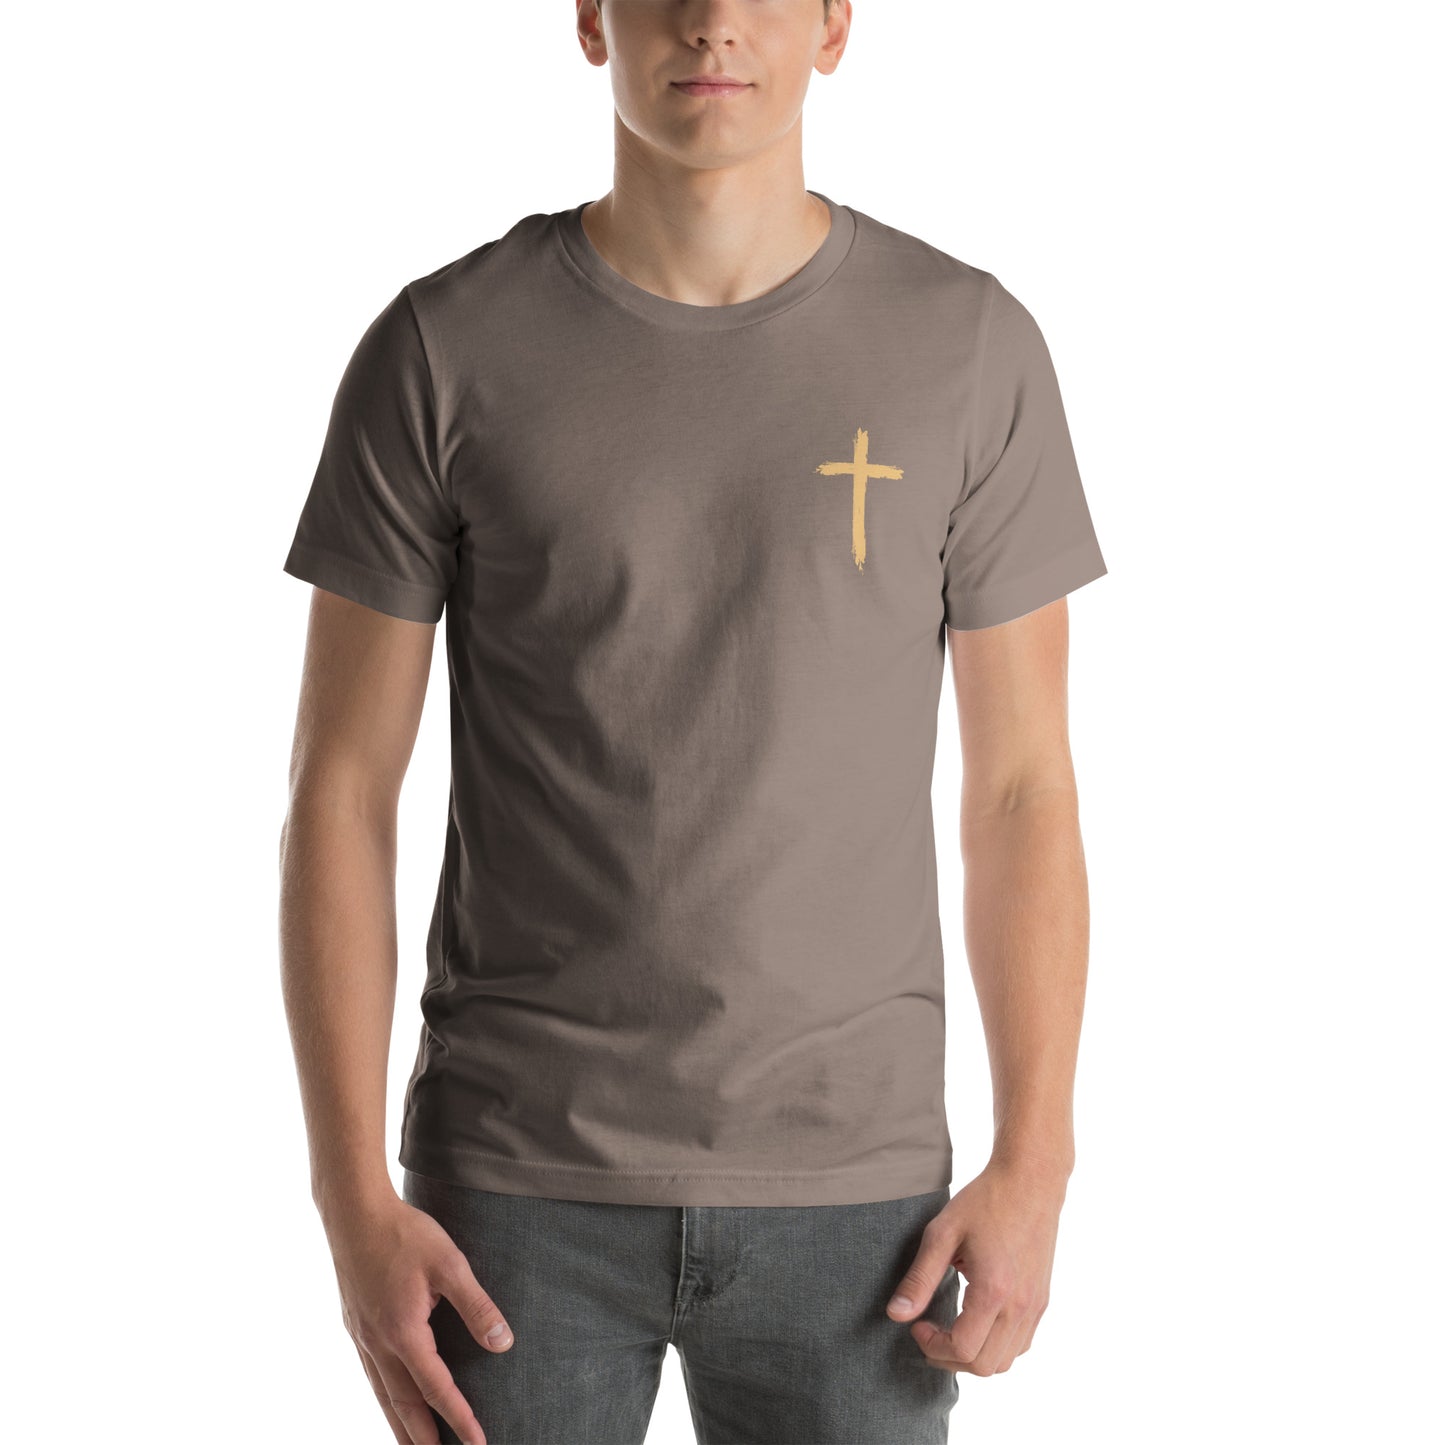 Living Proof of a Loving God t-shirt